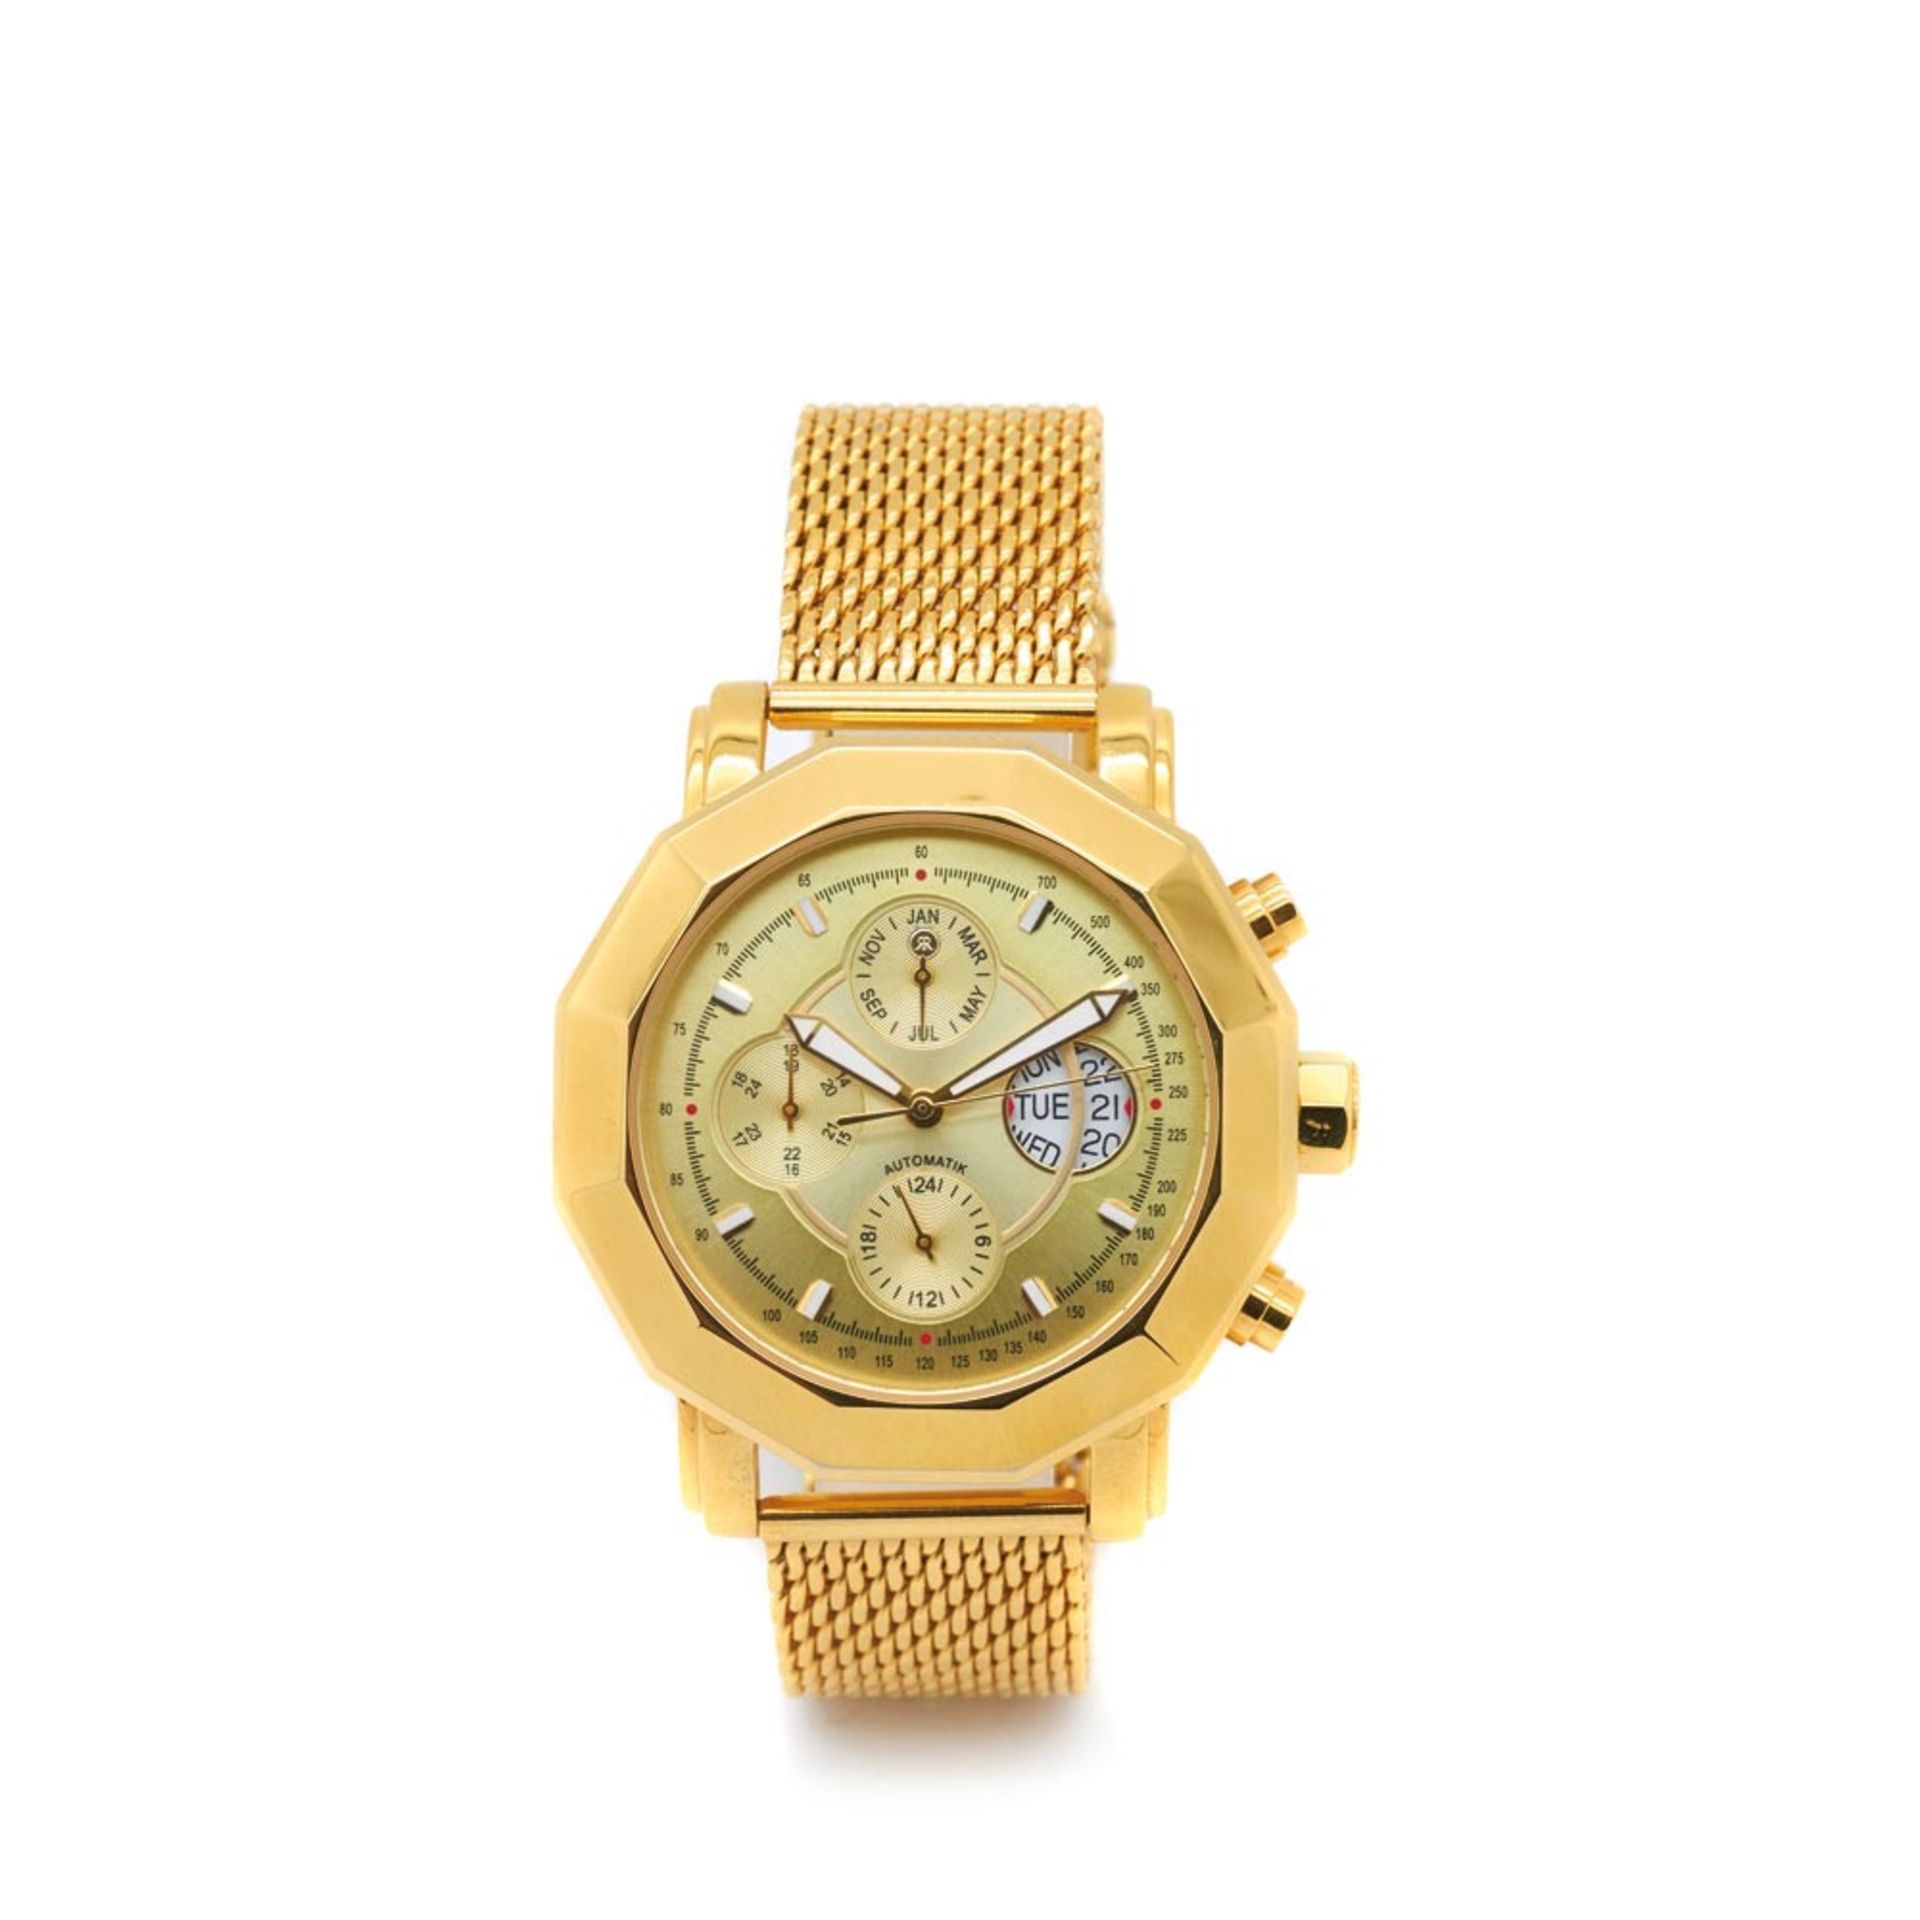 Reichenbach Asmus gold plated wristwatch, c.2012